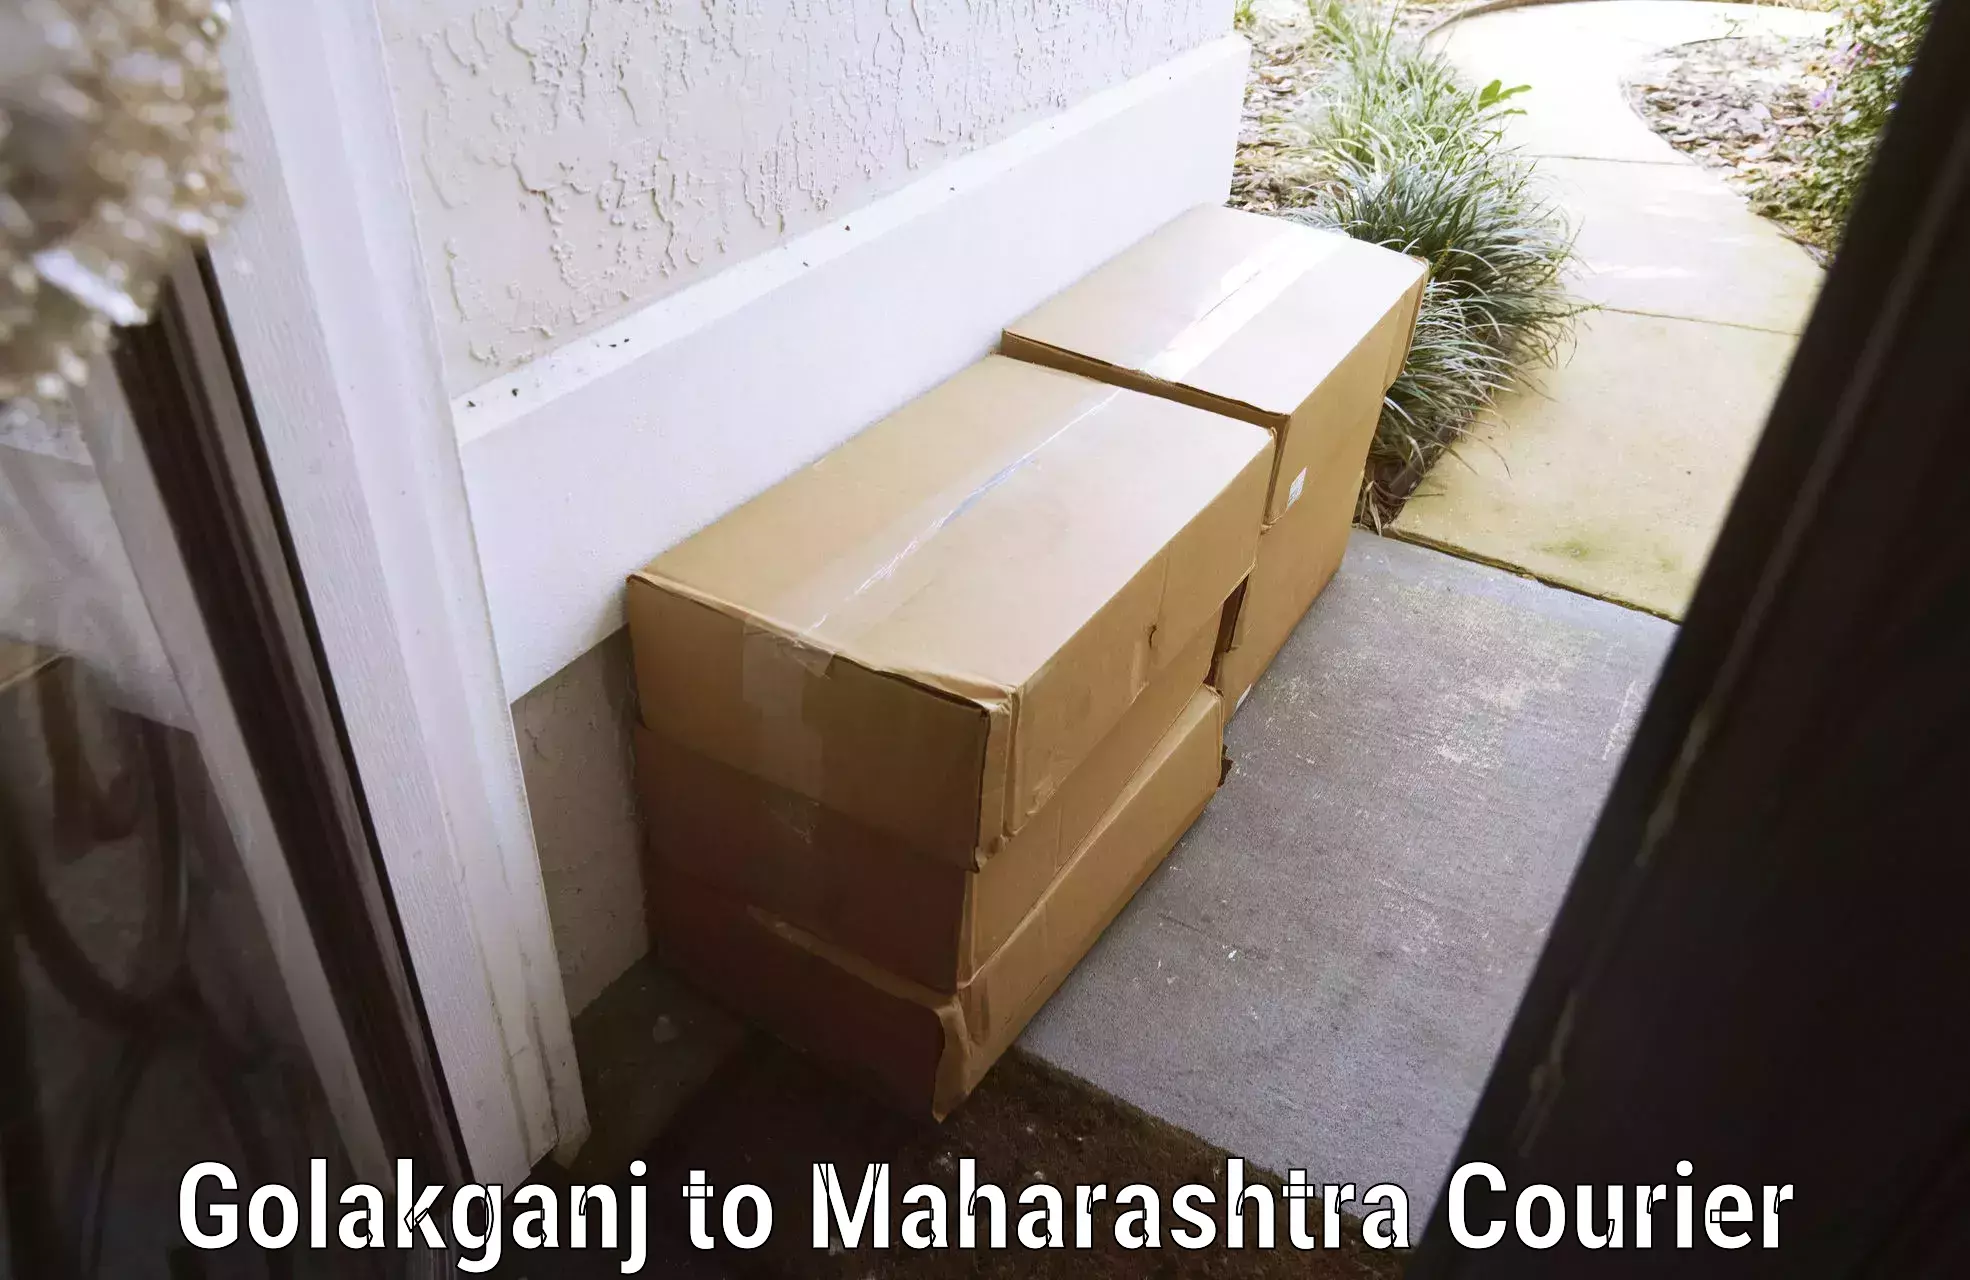 Luggage delivery network Golakganj to Maharashtra